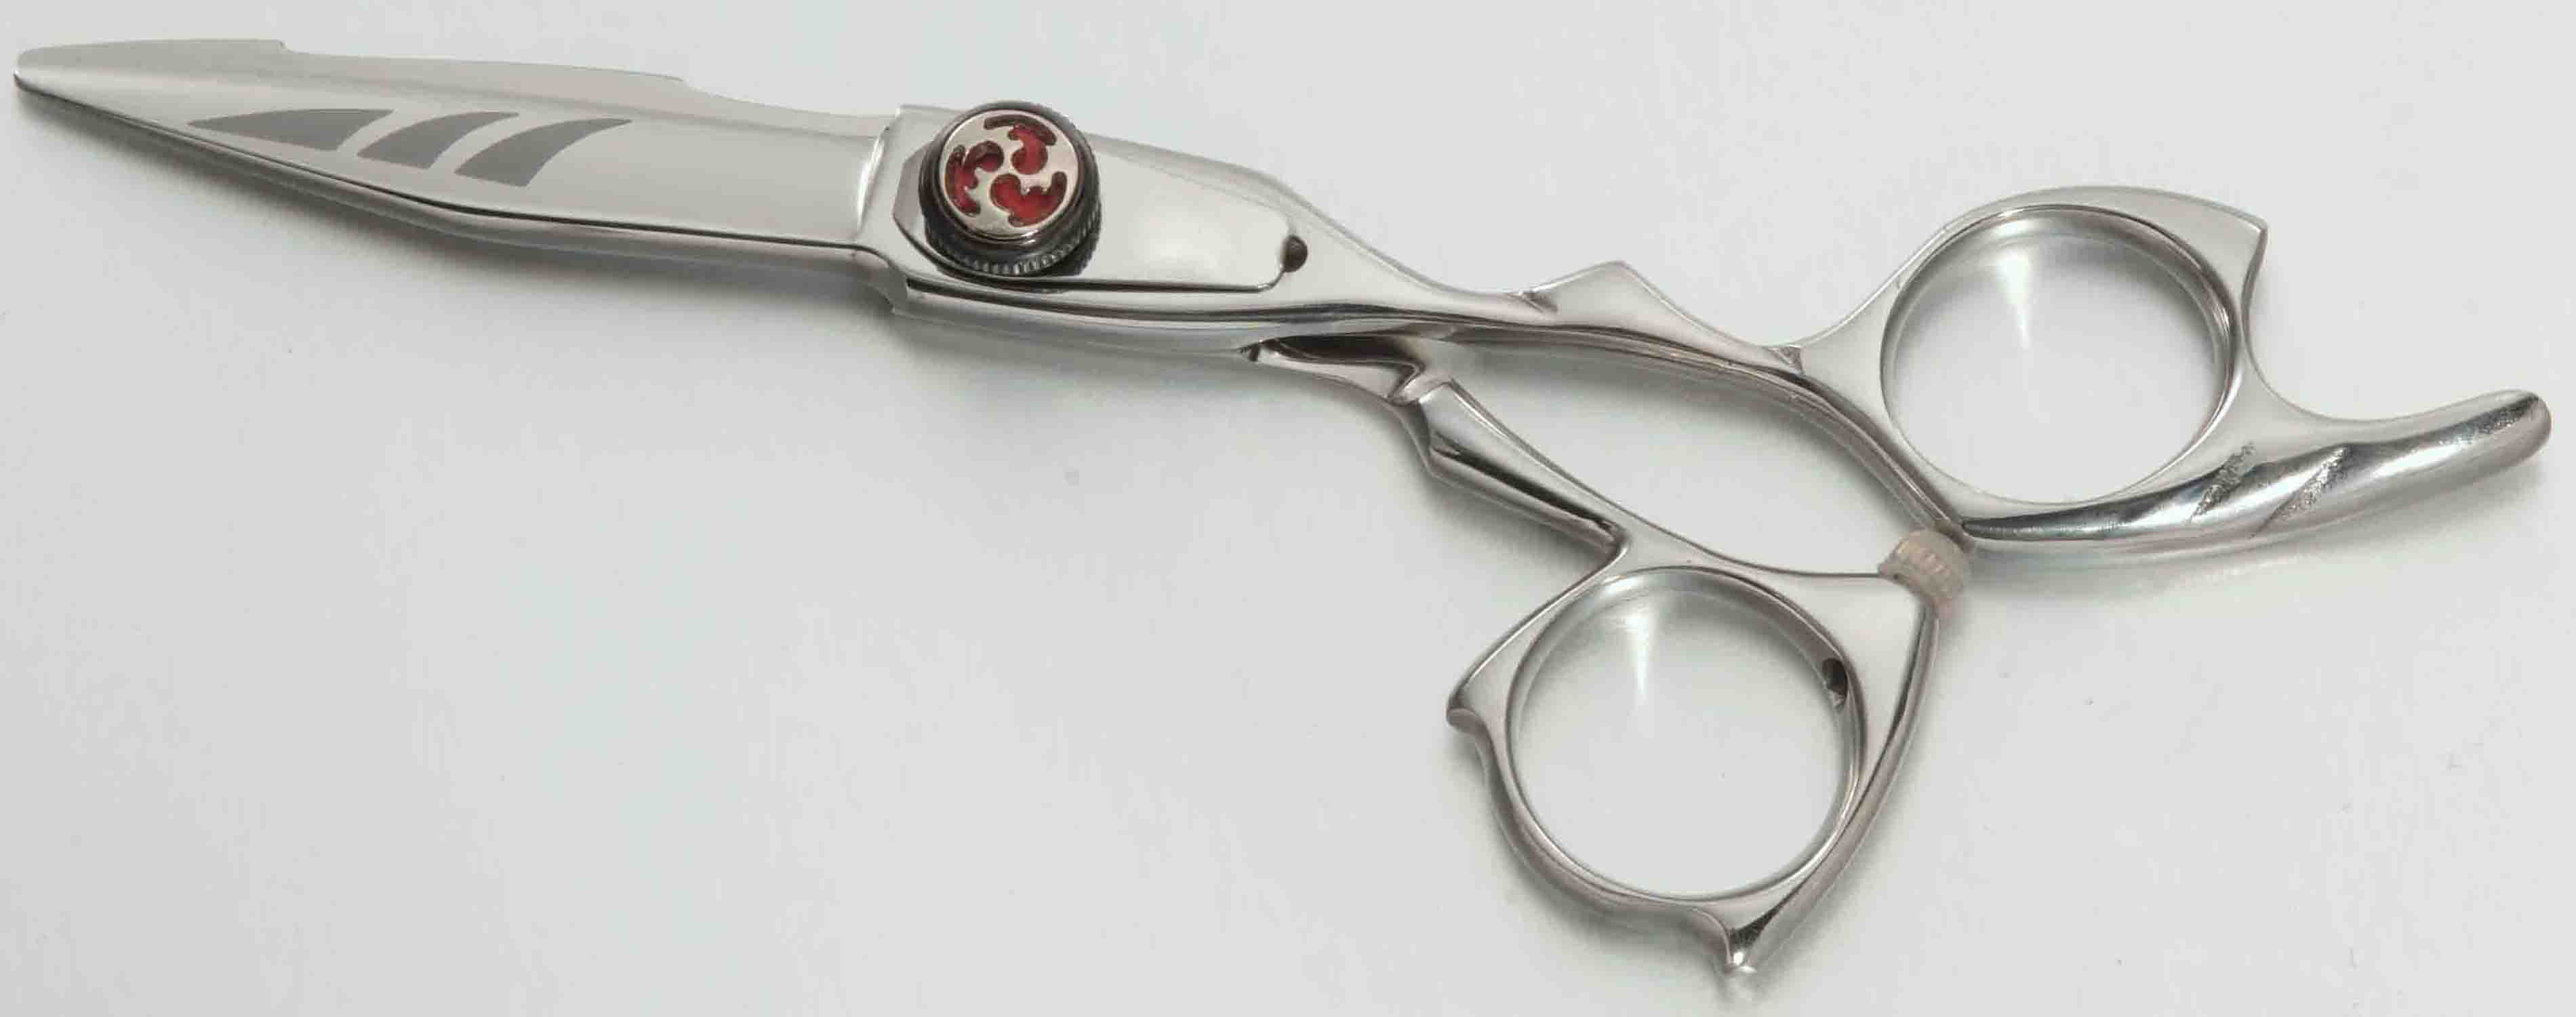 special scissors